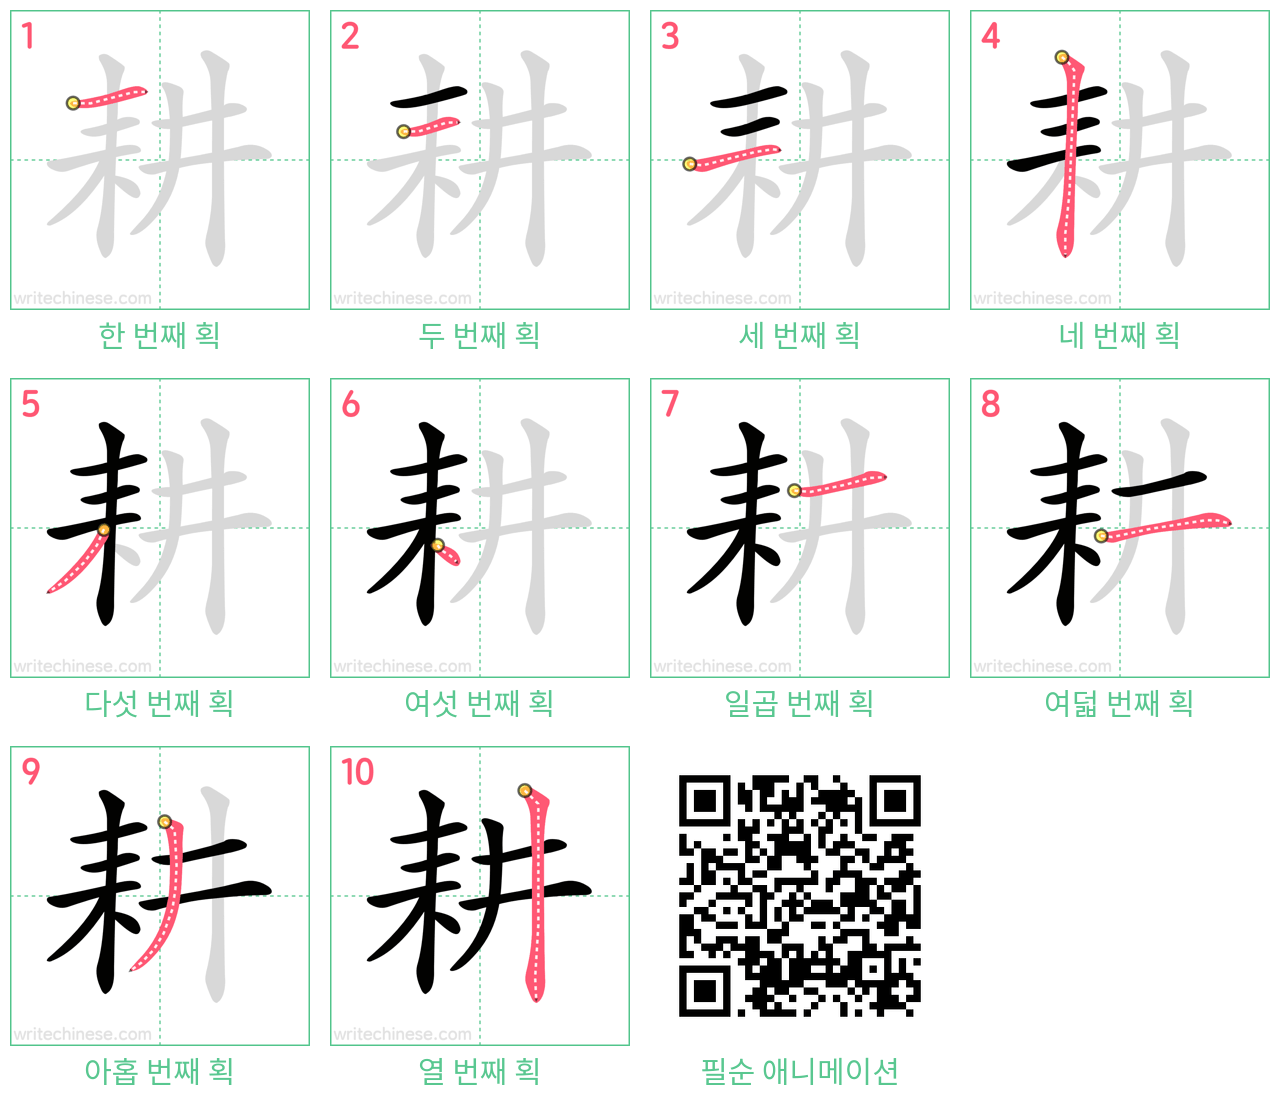 耕 step-by-step stroke order diagrams